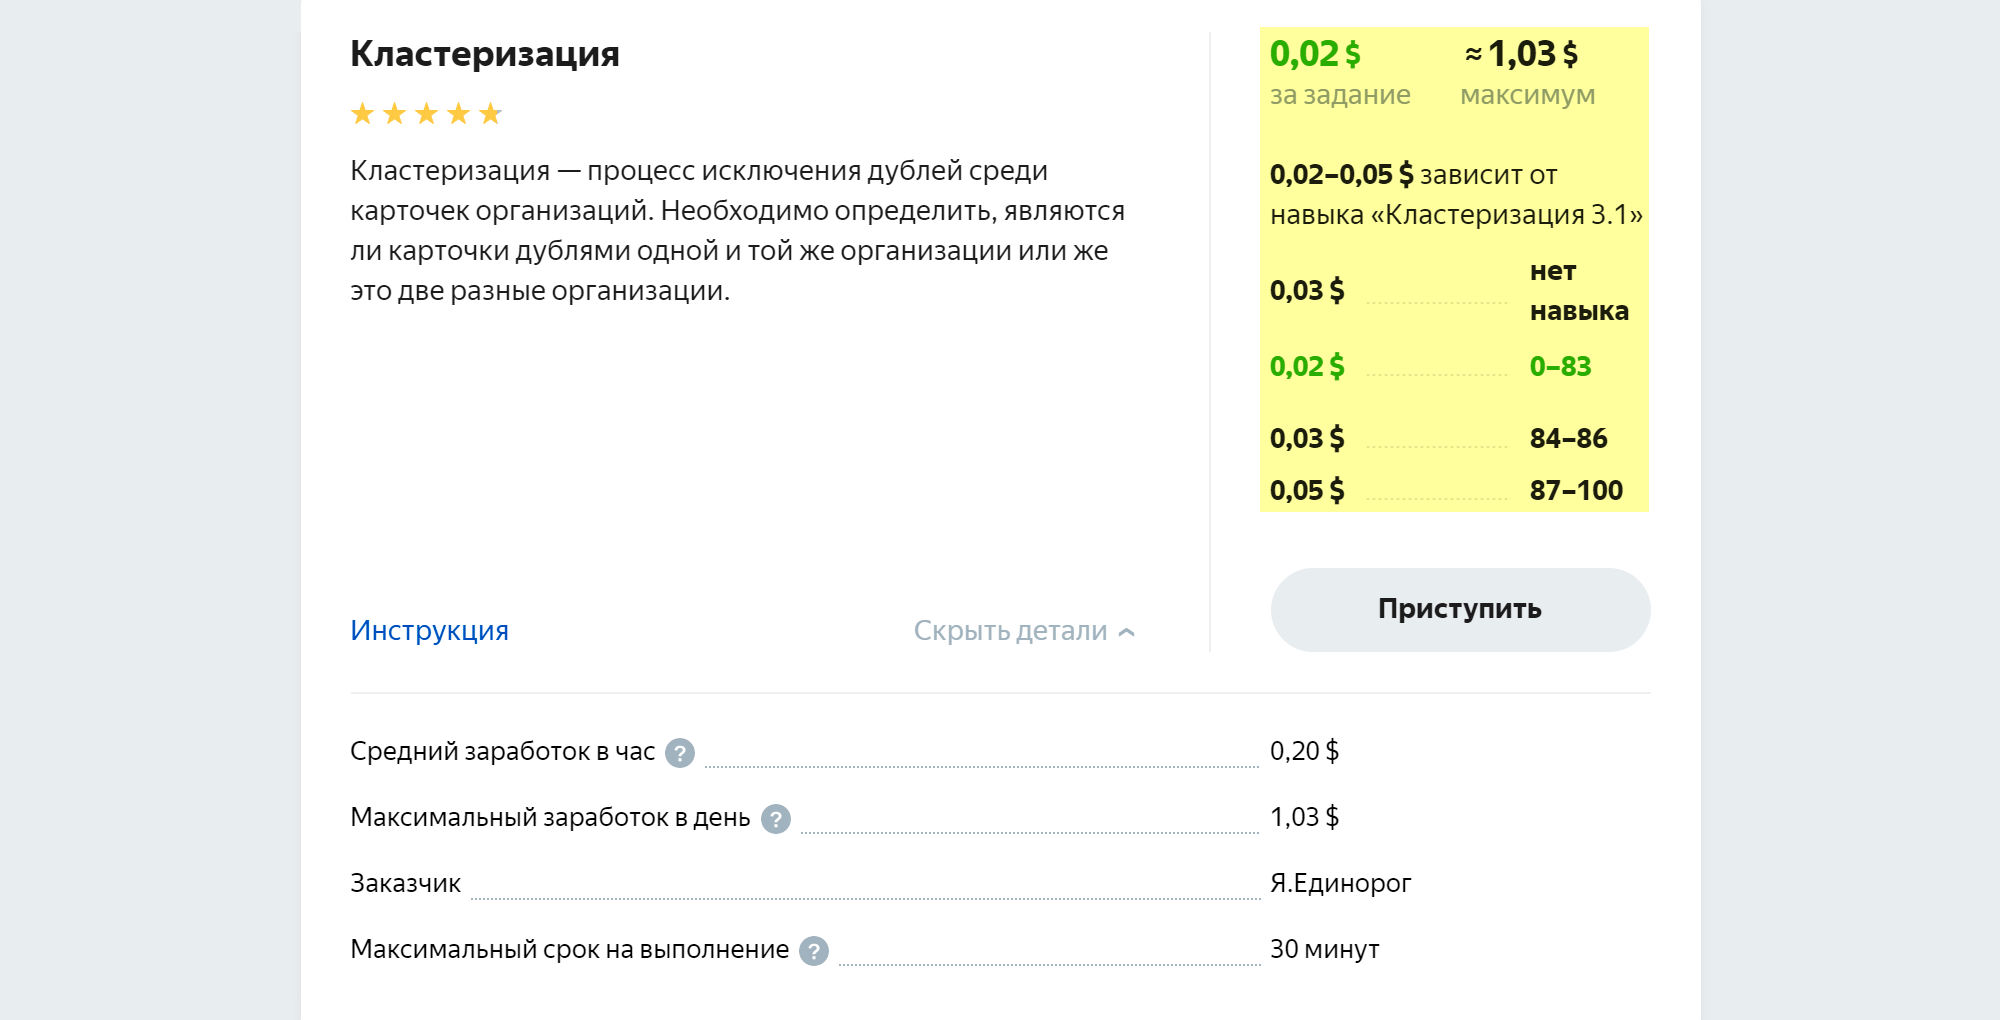 За кластеризацию платят в среднем 20 центов в час (12,6 рублей). Ее заказывает «Яндекс-единорог» — сервис, который занимается данными об организациях, а вовсе не радугами